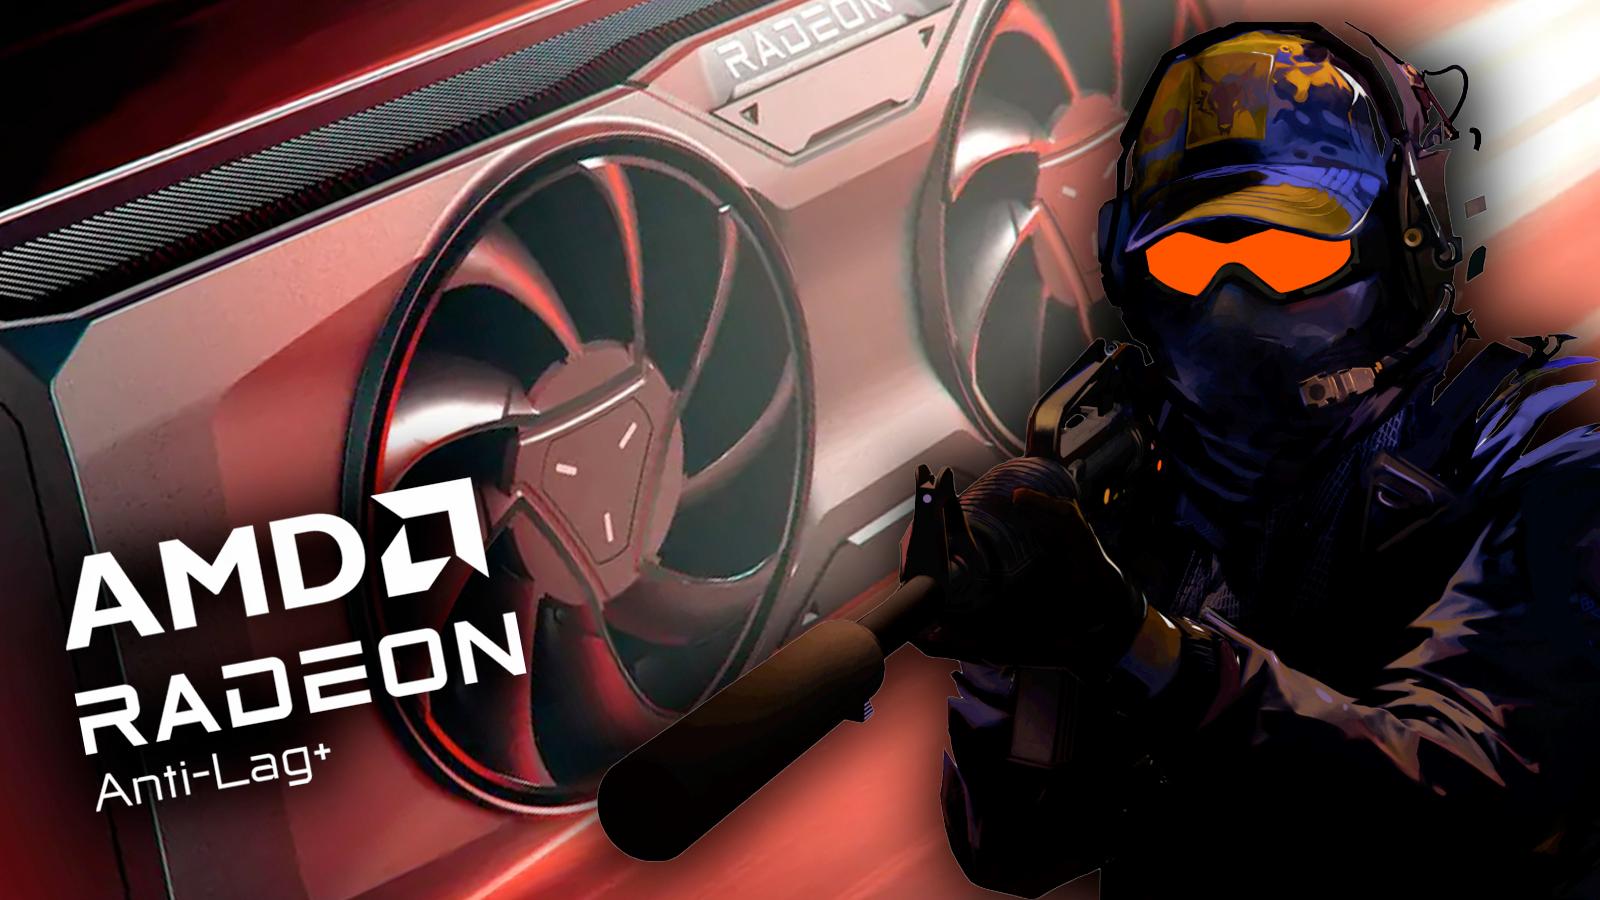 AMD Anti-Lag causing bans in Counter-Strike 2